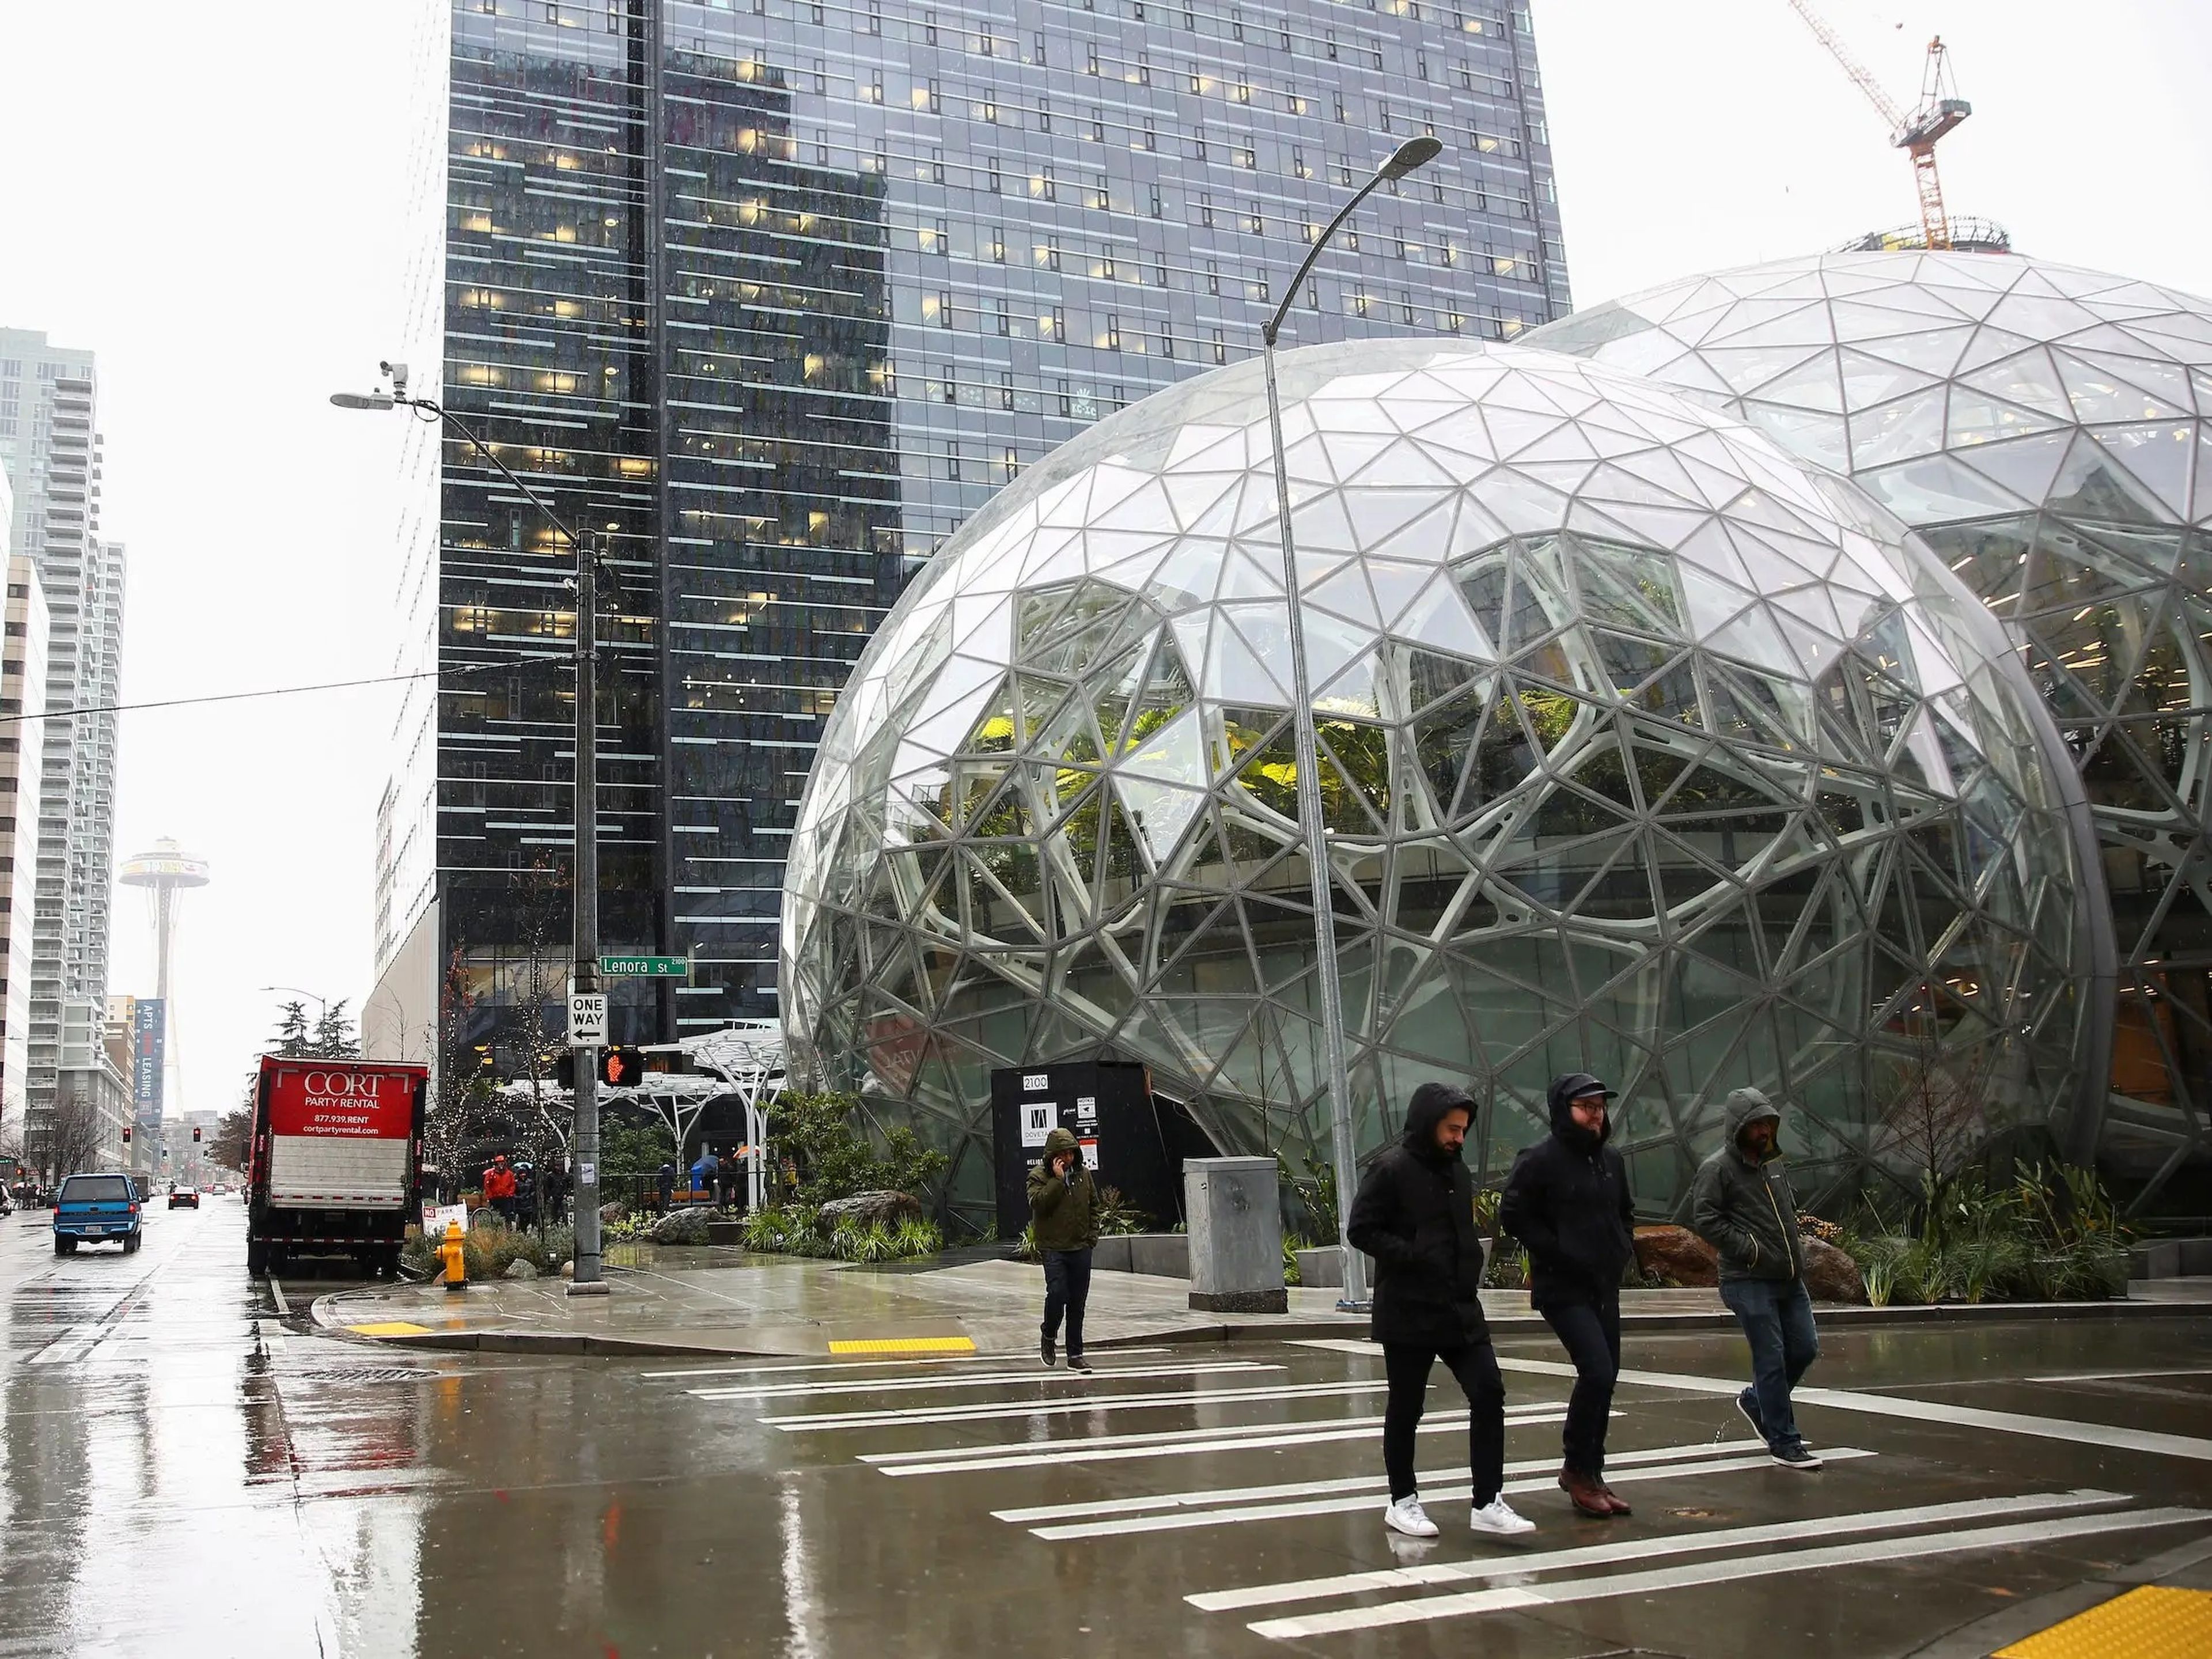 Las esferas de Amazon vistas desde la calle Lenora, en la sede de Amazon en Seattle, Washington, Estados Unidos.